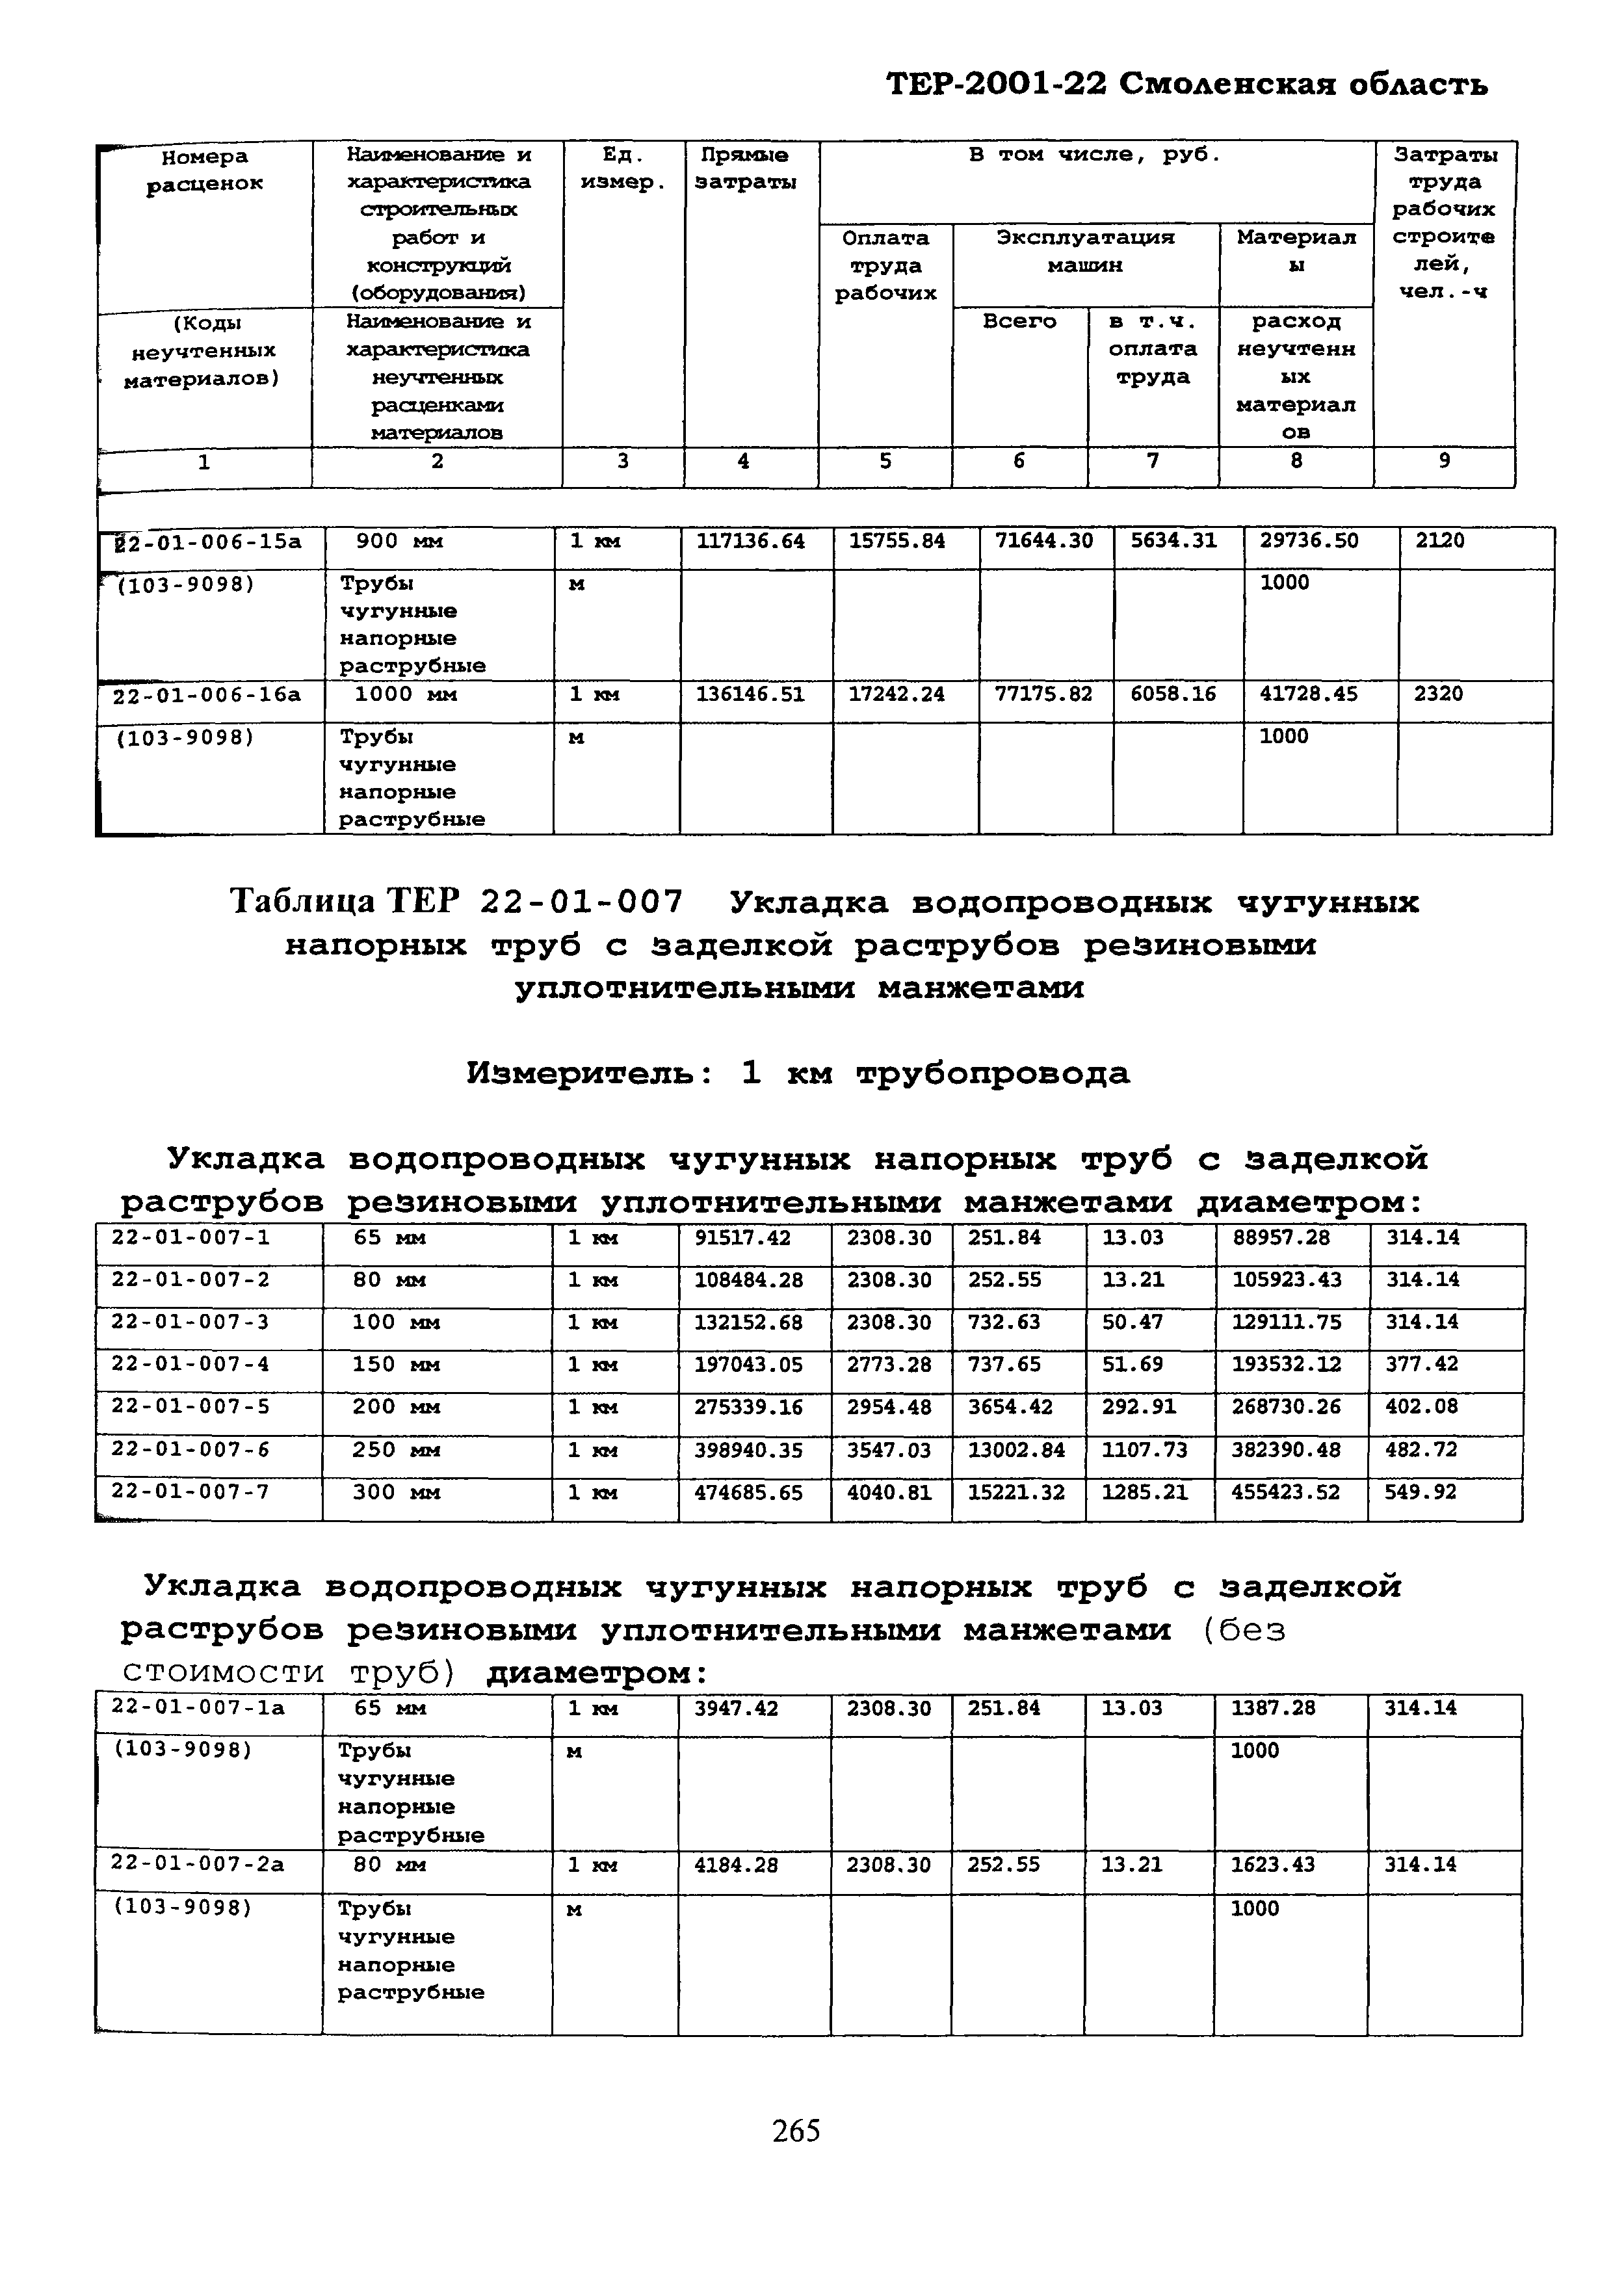 ТЕР Смоленская область 2001-22